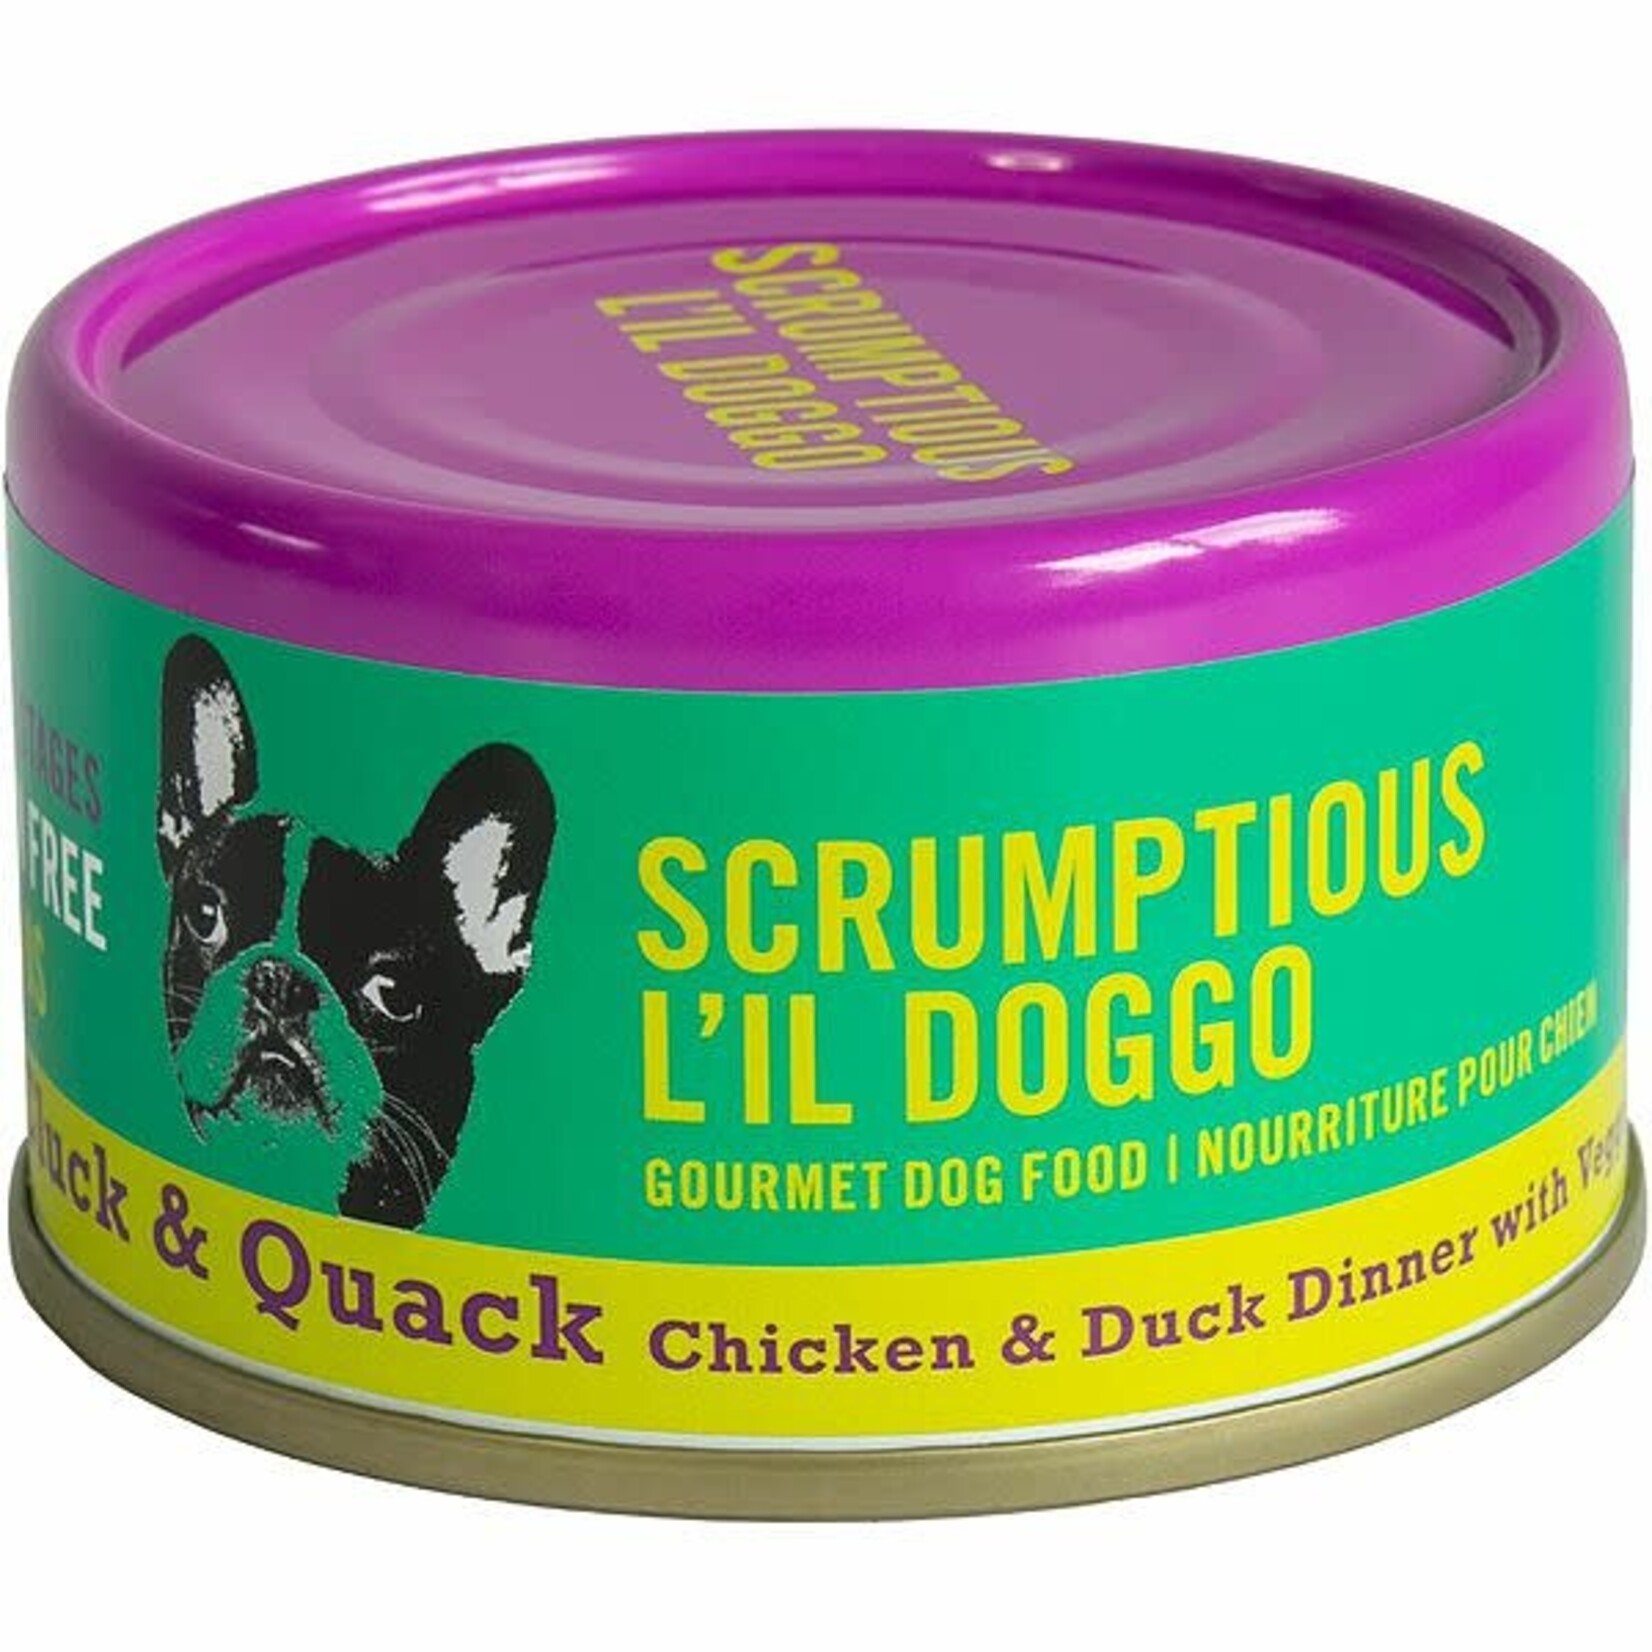 Scrumptious Scrumptious dog Wet food Chicken Duck & Veggie Dinner in Gravy 3oz